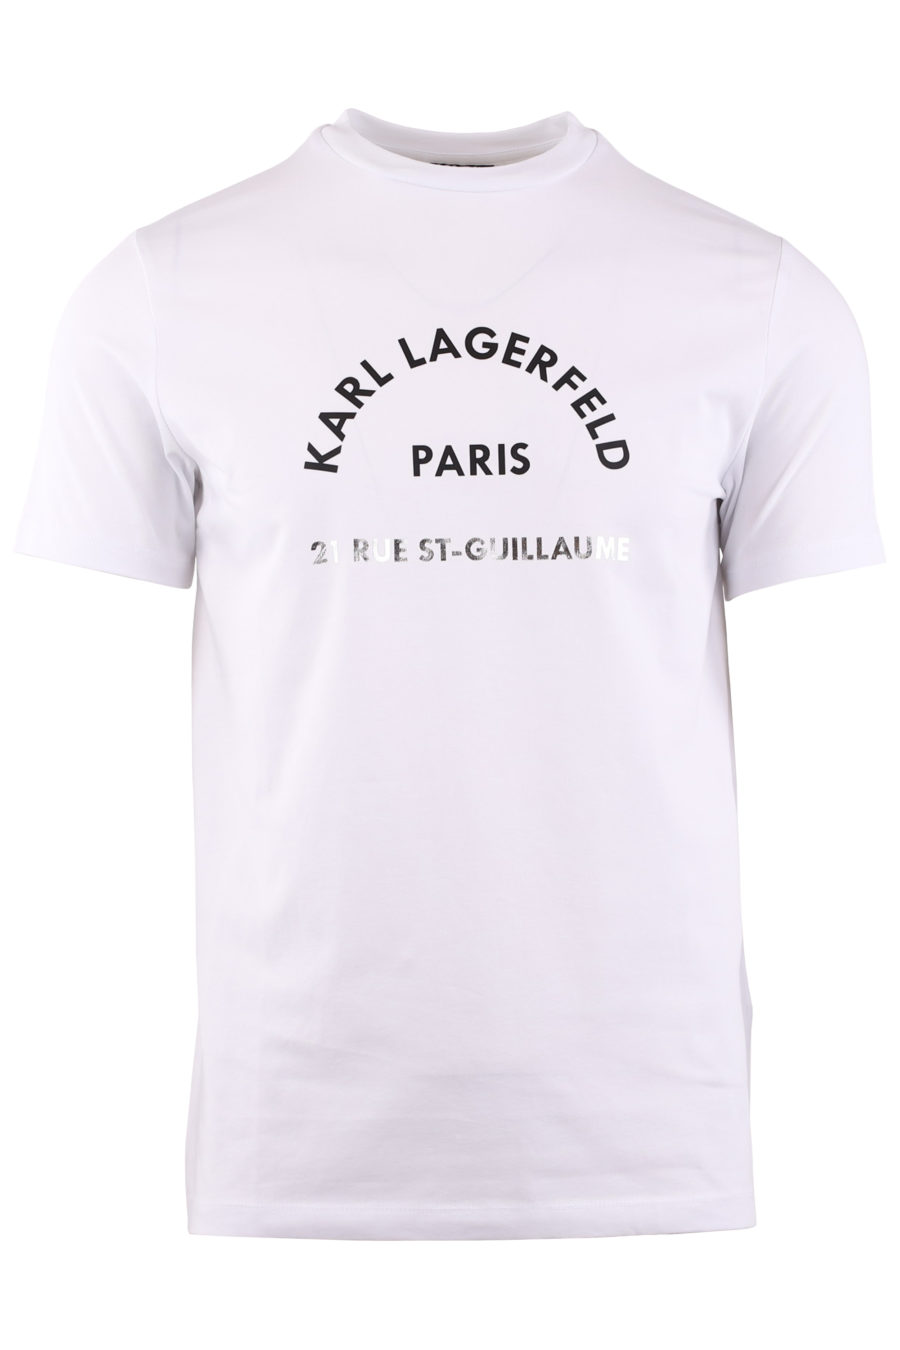 T-shirt blanc avec logo - 370eca849a4f432c4ccb8eece2b11cd4acbcbb49